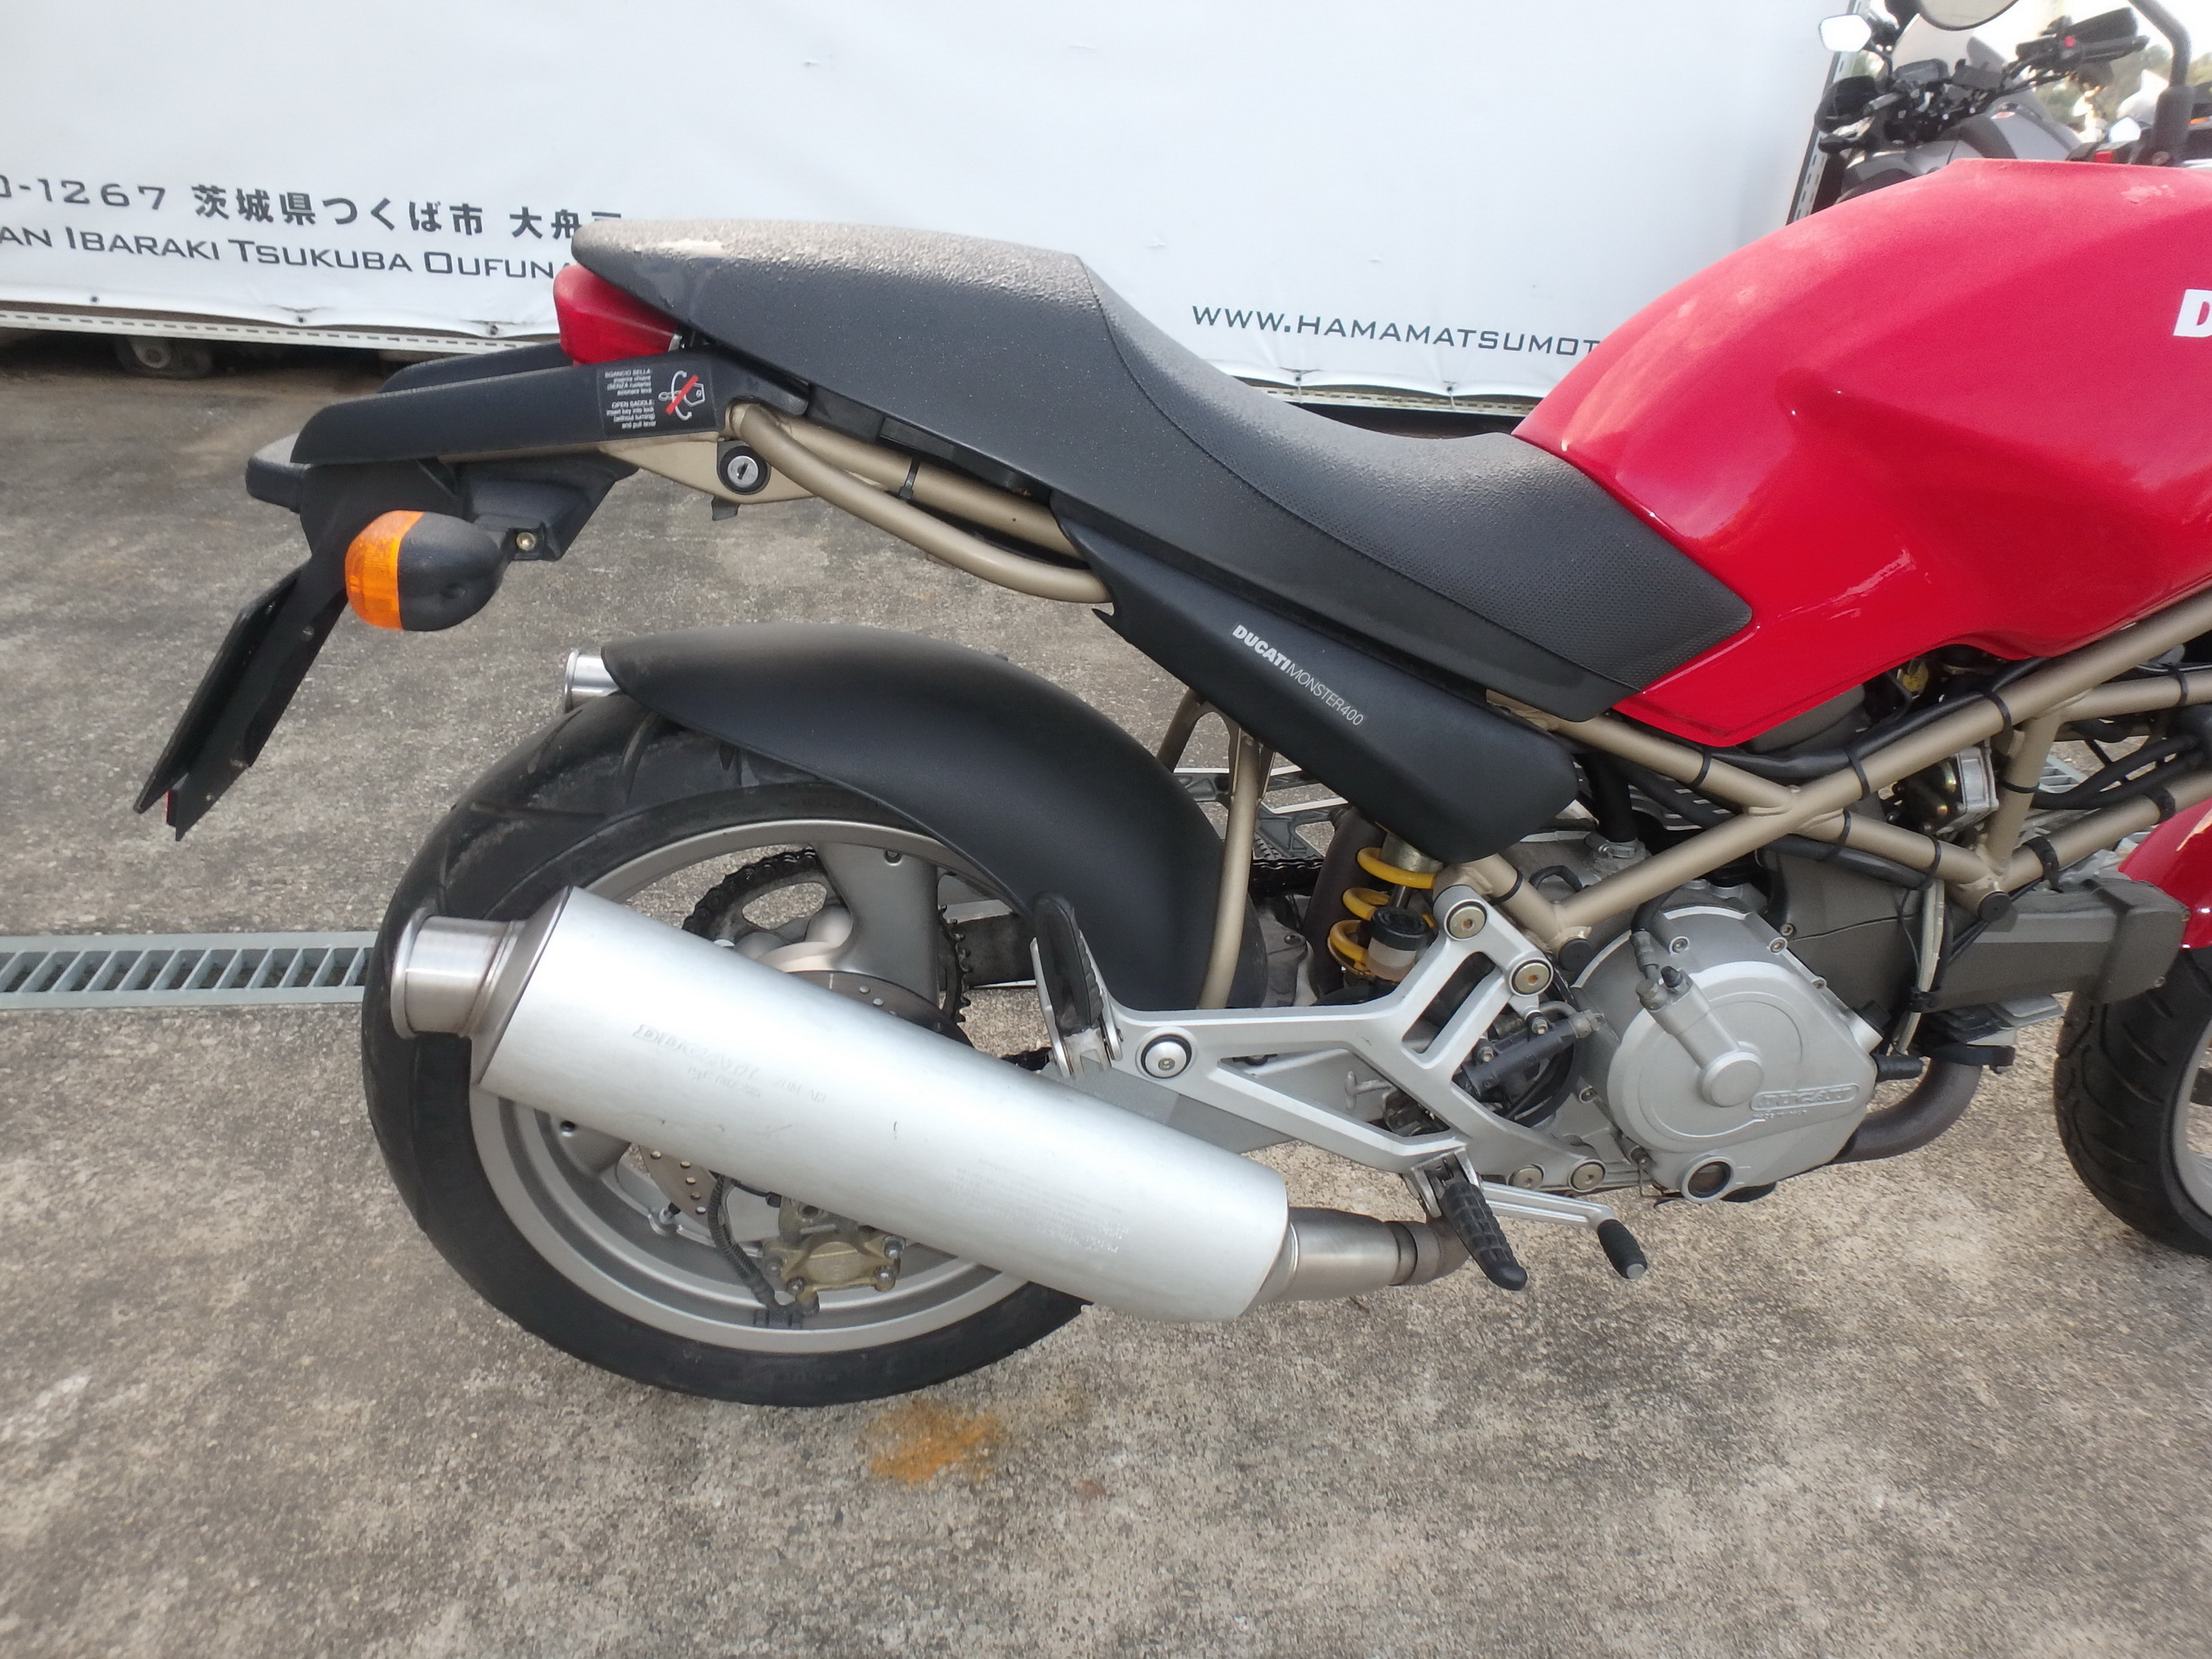 Buy motorcycle Ducati Monster400 M400: japanese motorcycle Ducati 